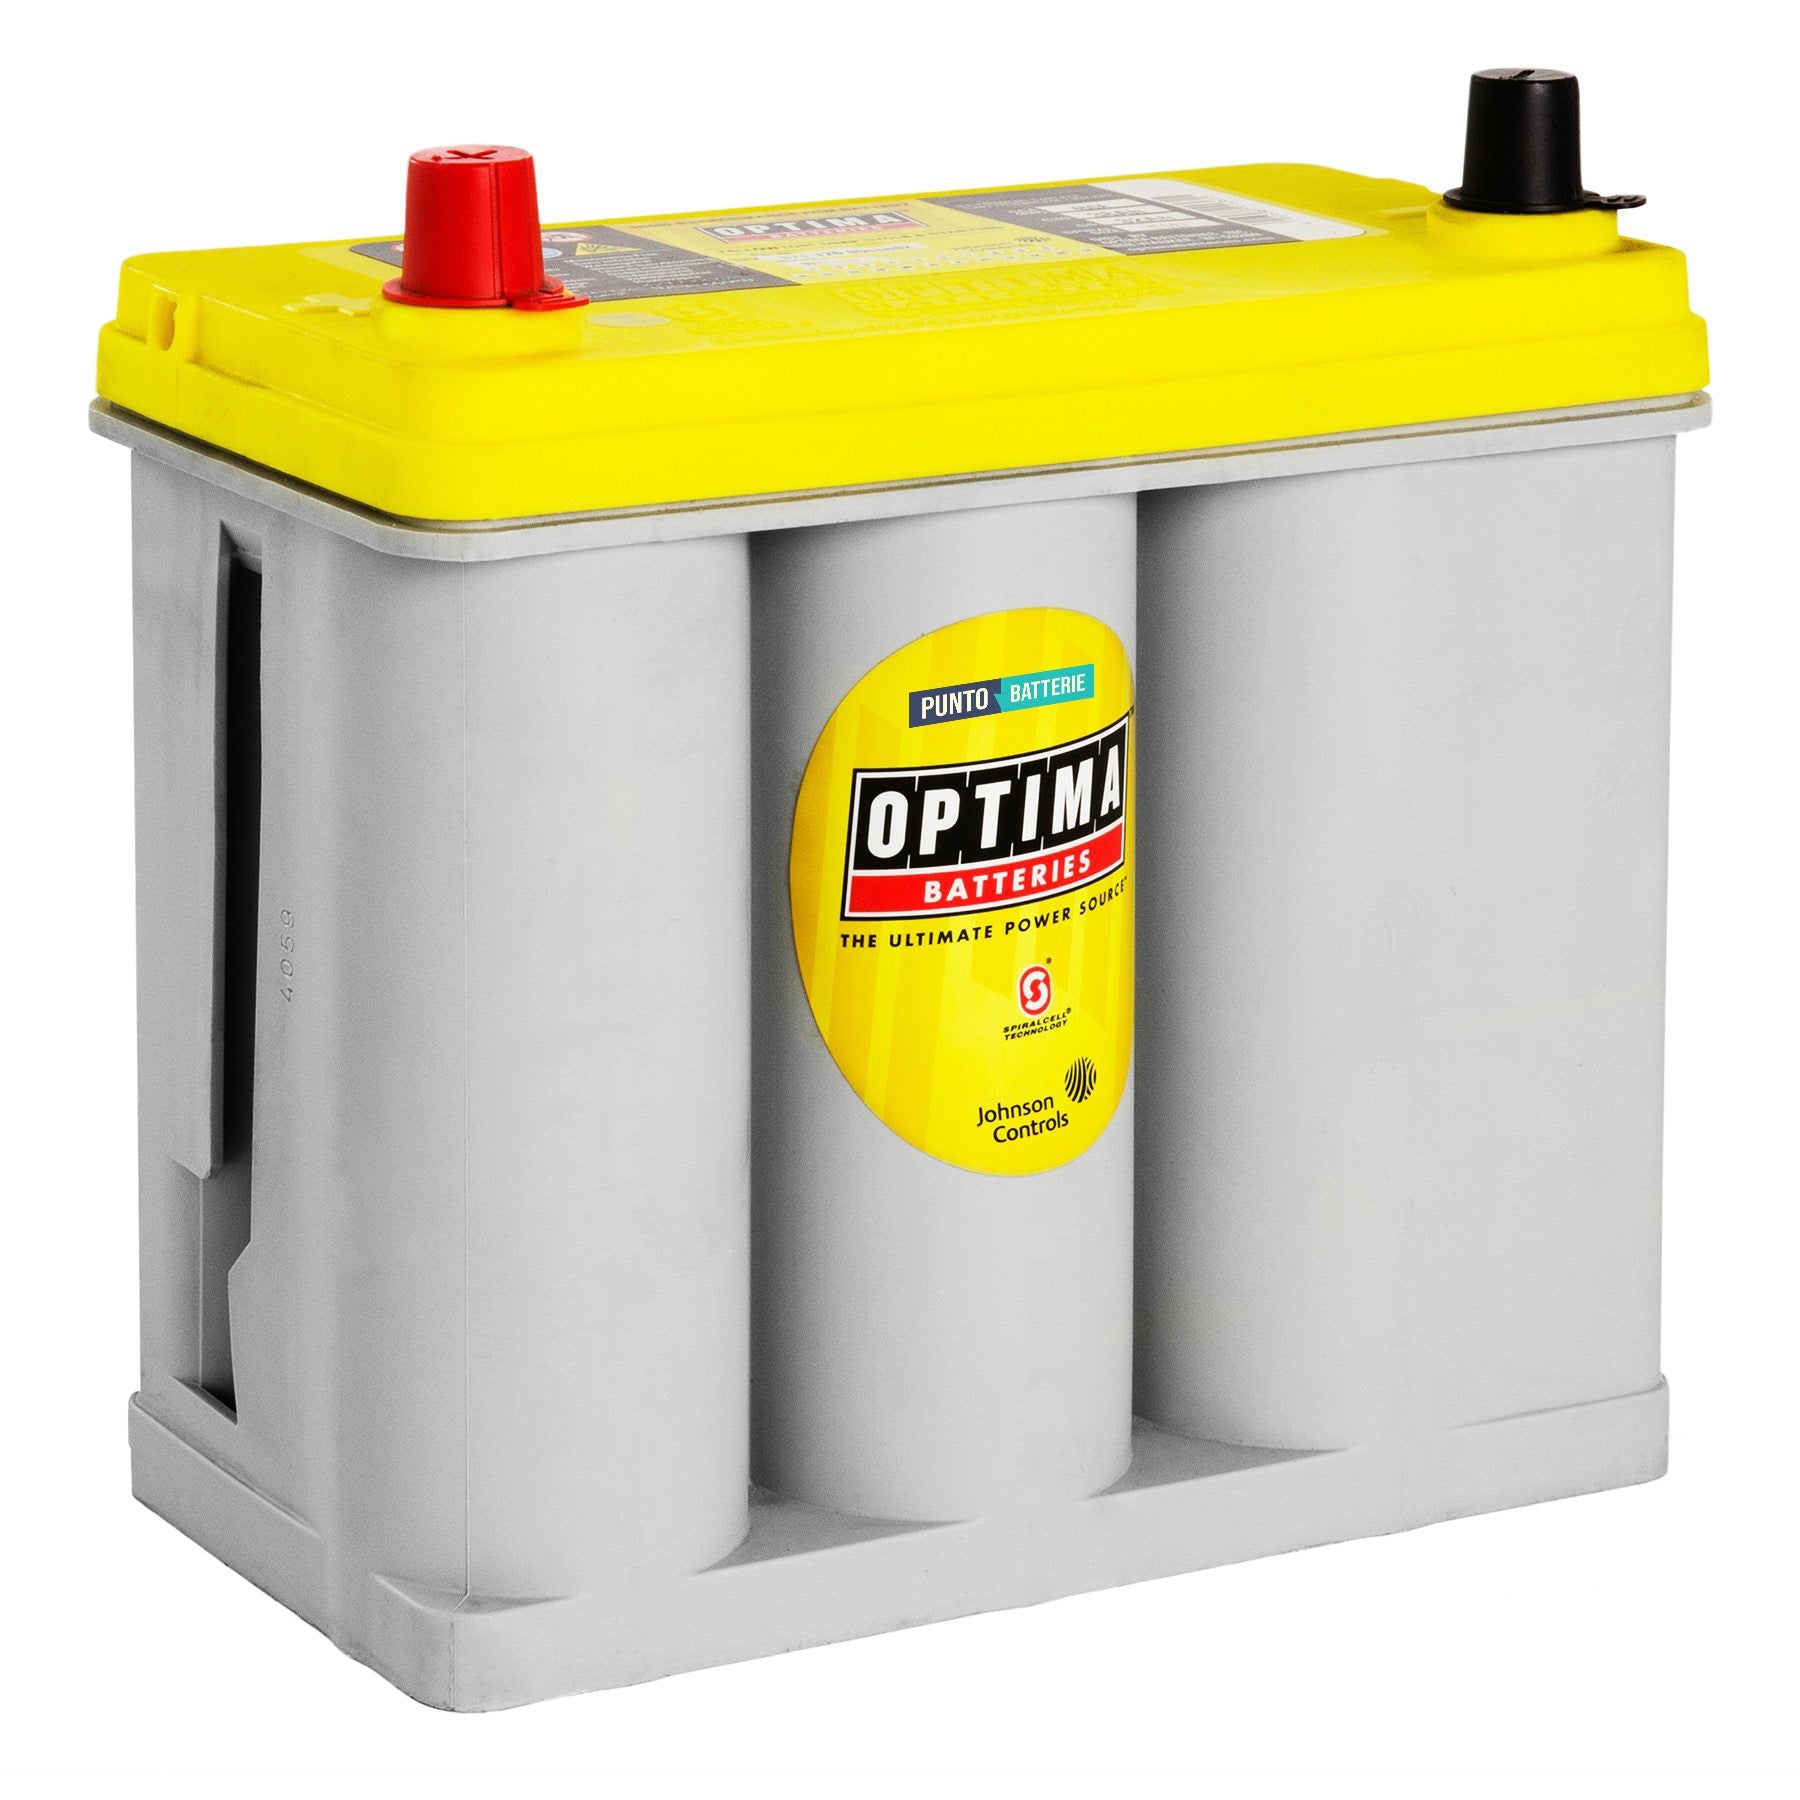 Batteria originale Optima Yellow Top YT S 2,7, dimensioni 237 x 129 x 227, polo positivo a sinistra, 12 volt, 38 amperora, 460 ampere, AGM. Batteria per veicoli e per l'alimentazione di servizi.